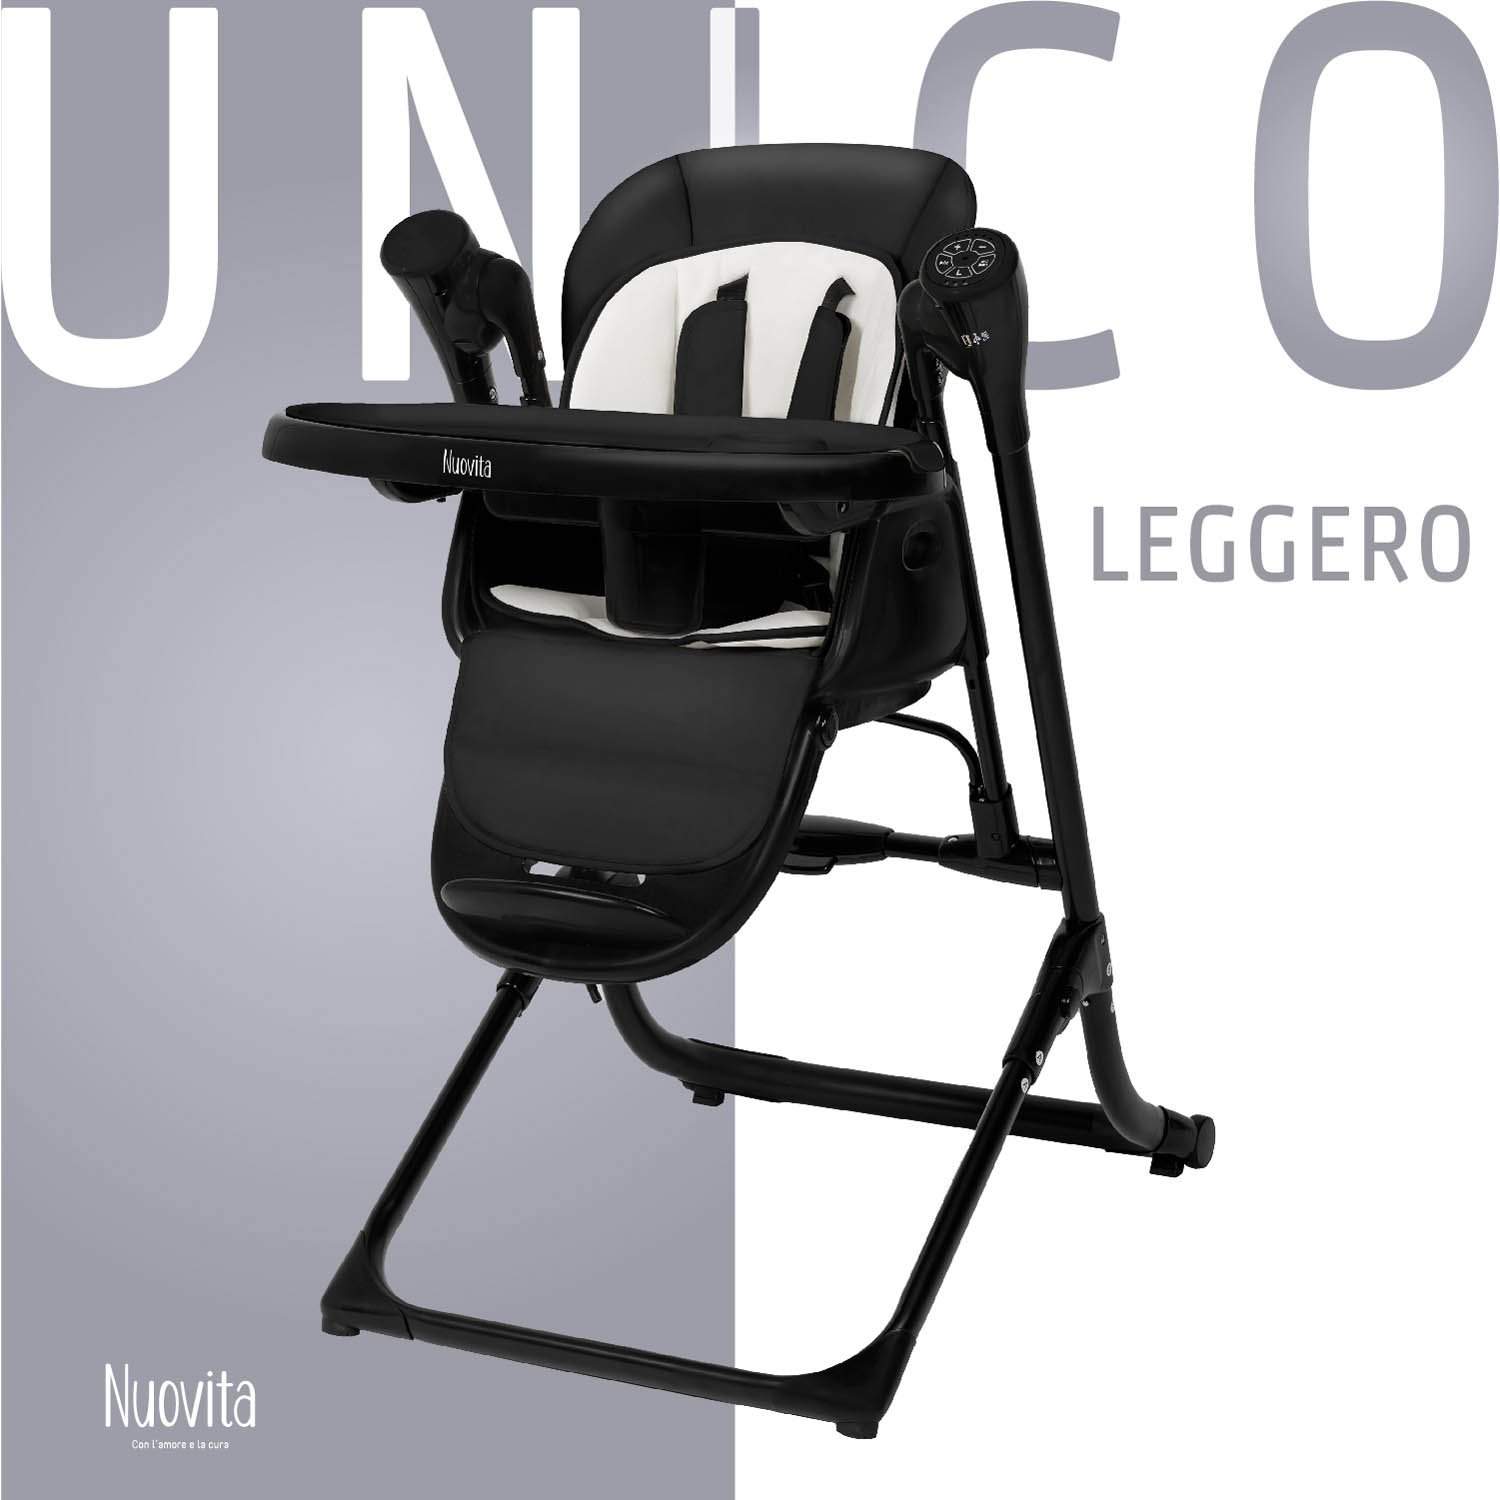 Стульчик для кормления с электронной функцией качения Nuovita Unico Leggero Nero черный стульчик для кормления nuovita с электронным устройством качения unico lux